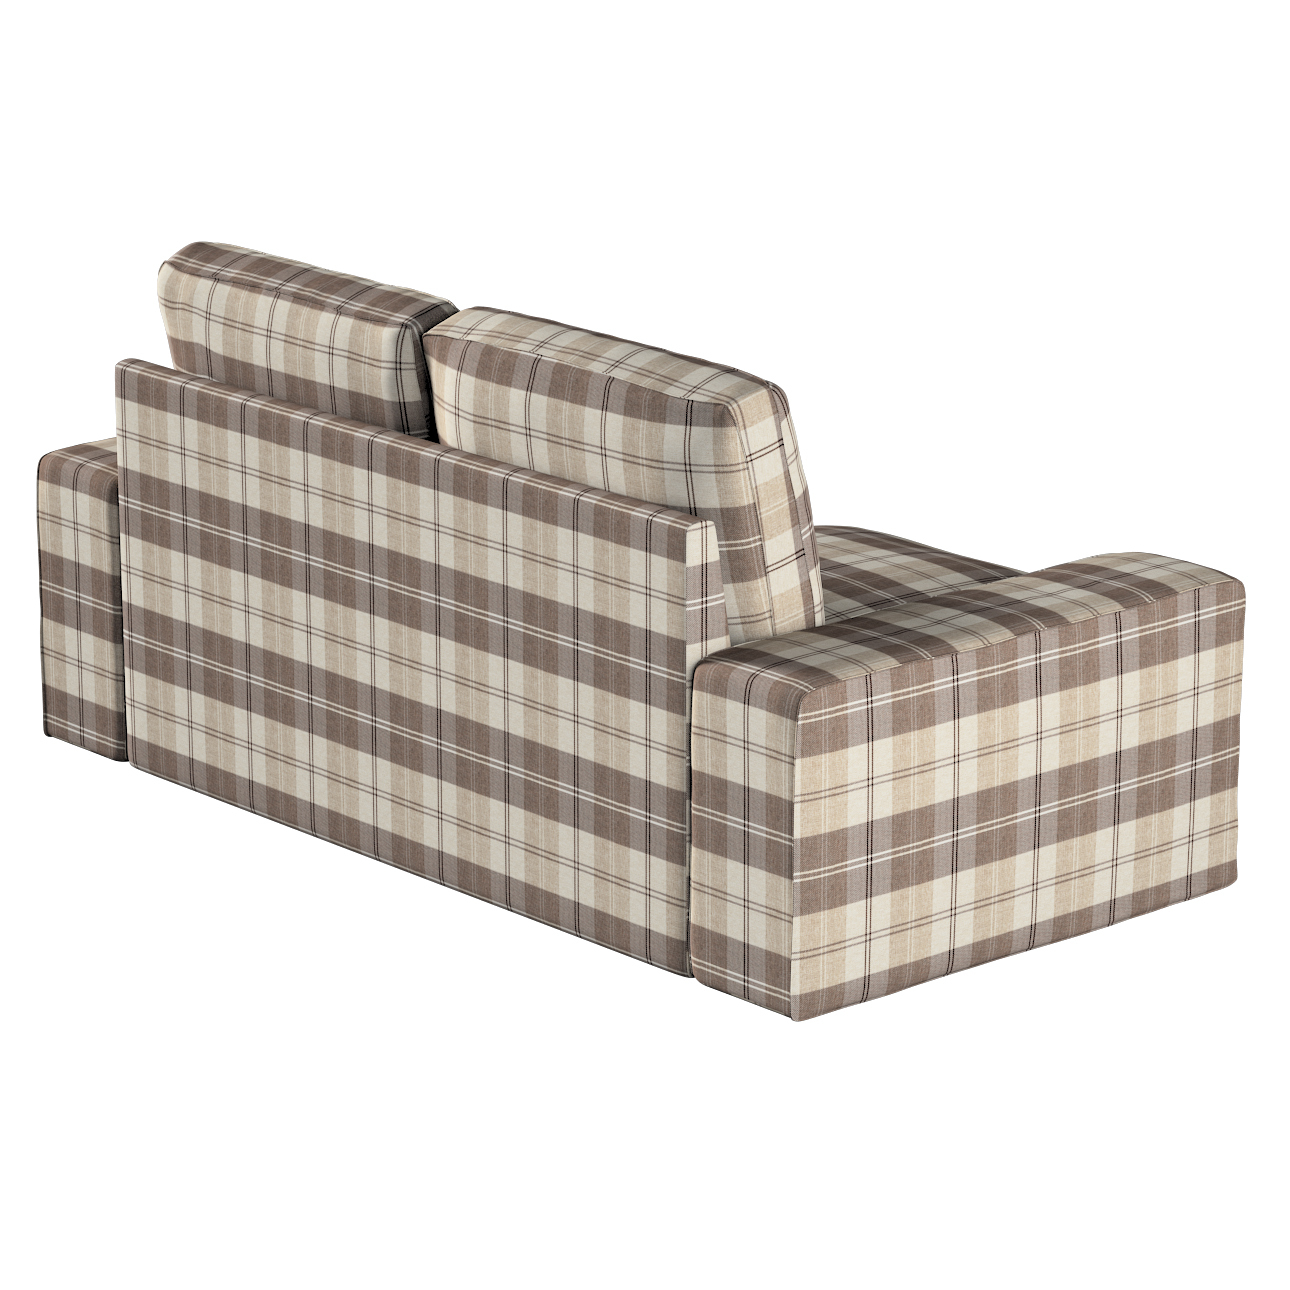 Bezug für Kivik 2-Sitzer Sofa, braun-beige, Bezug für Sofa Kivik 2-Sitzer, günstig online kaufen